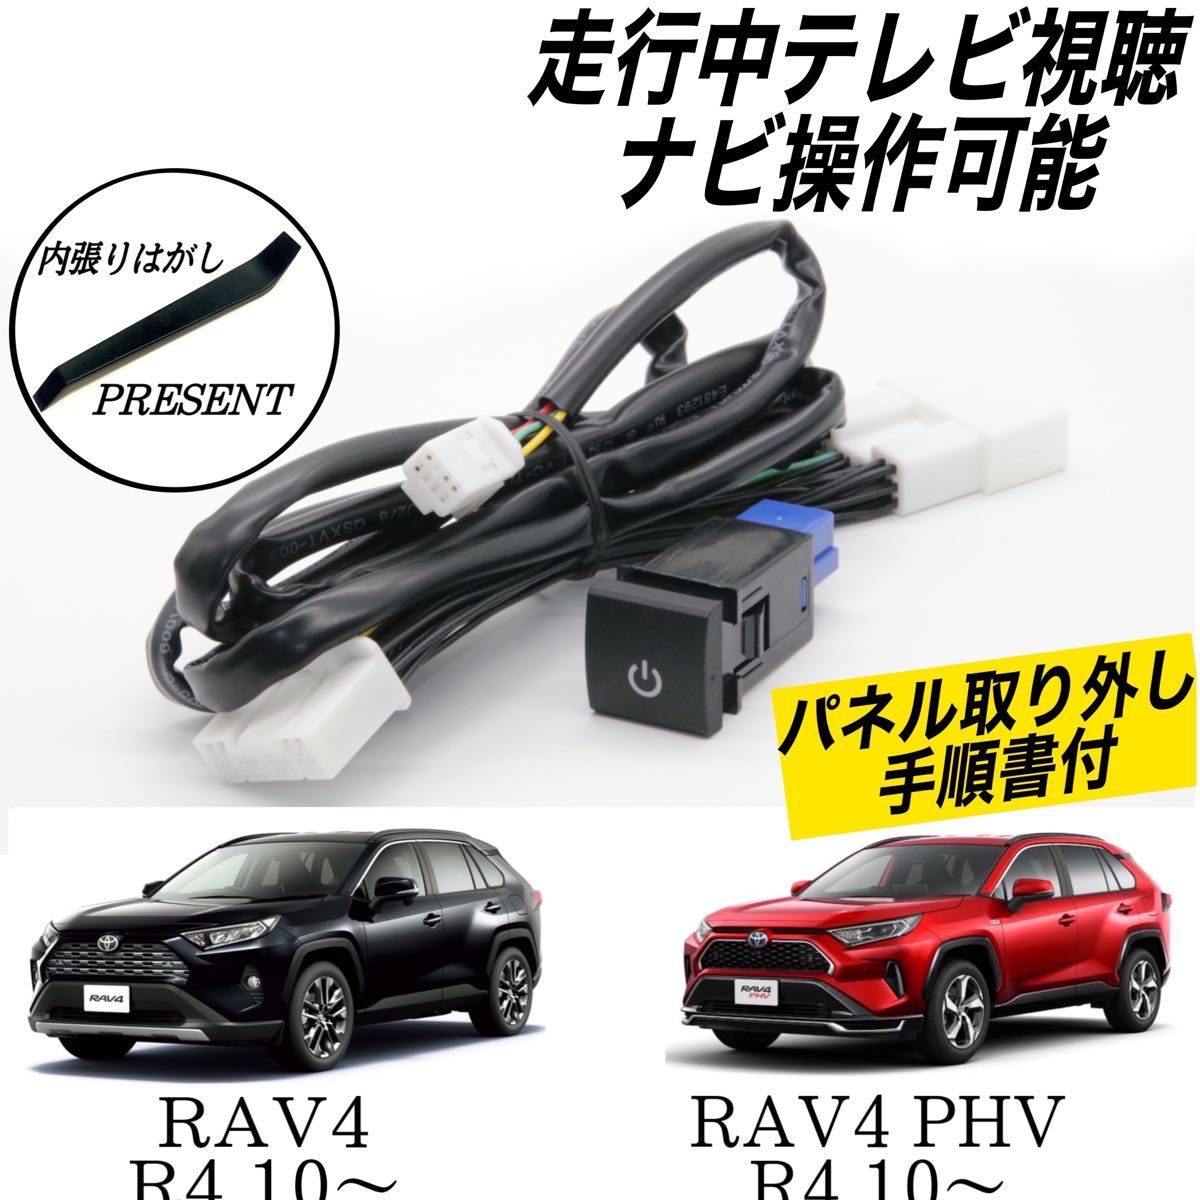 トヨタ　RAV4　AXAH52 54　AXAP54　MXAA52 54　R4.10～　ディスプレイオーディオ　テレビキット　ナビ